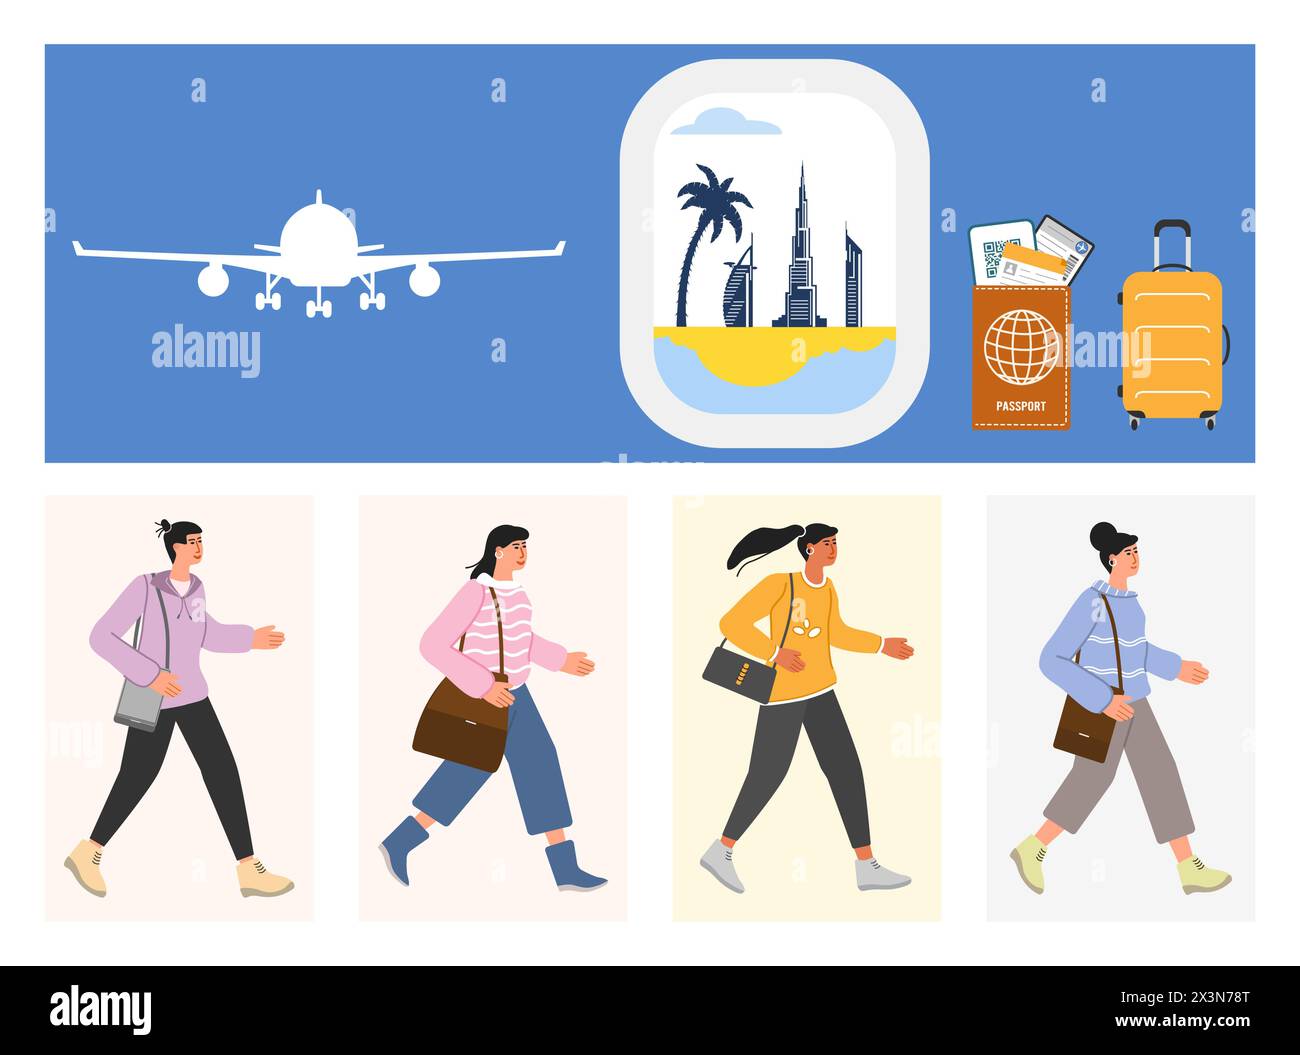 Illustration vectorielle personnes valise avion bâtiments de Dubaï, vue des hôtels depuis le hublot. Passeport voyage carte d'embarquement Tourisme vacances attraction touristique Illustration de Vecteur